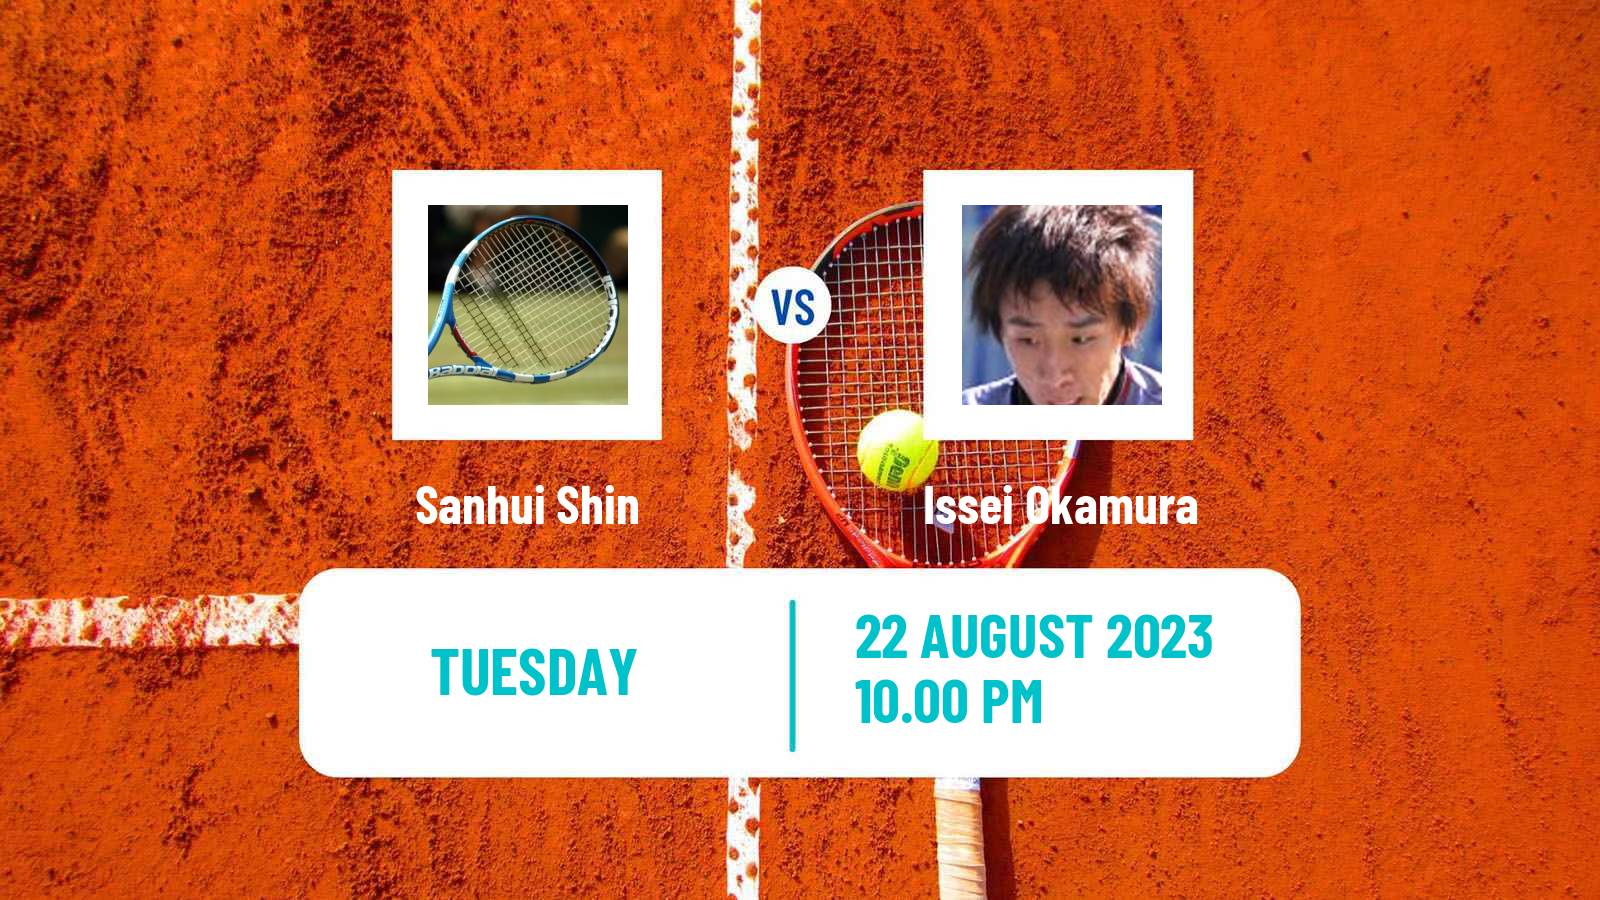 Tennis ITF M25 Tainan 2 Men Sanhui Shin - Issei Okamura